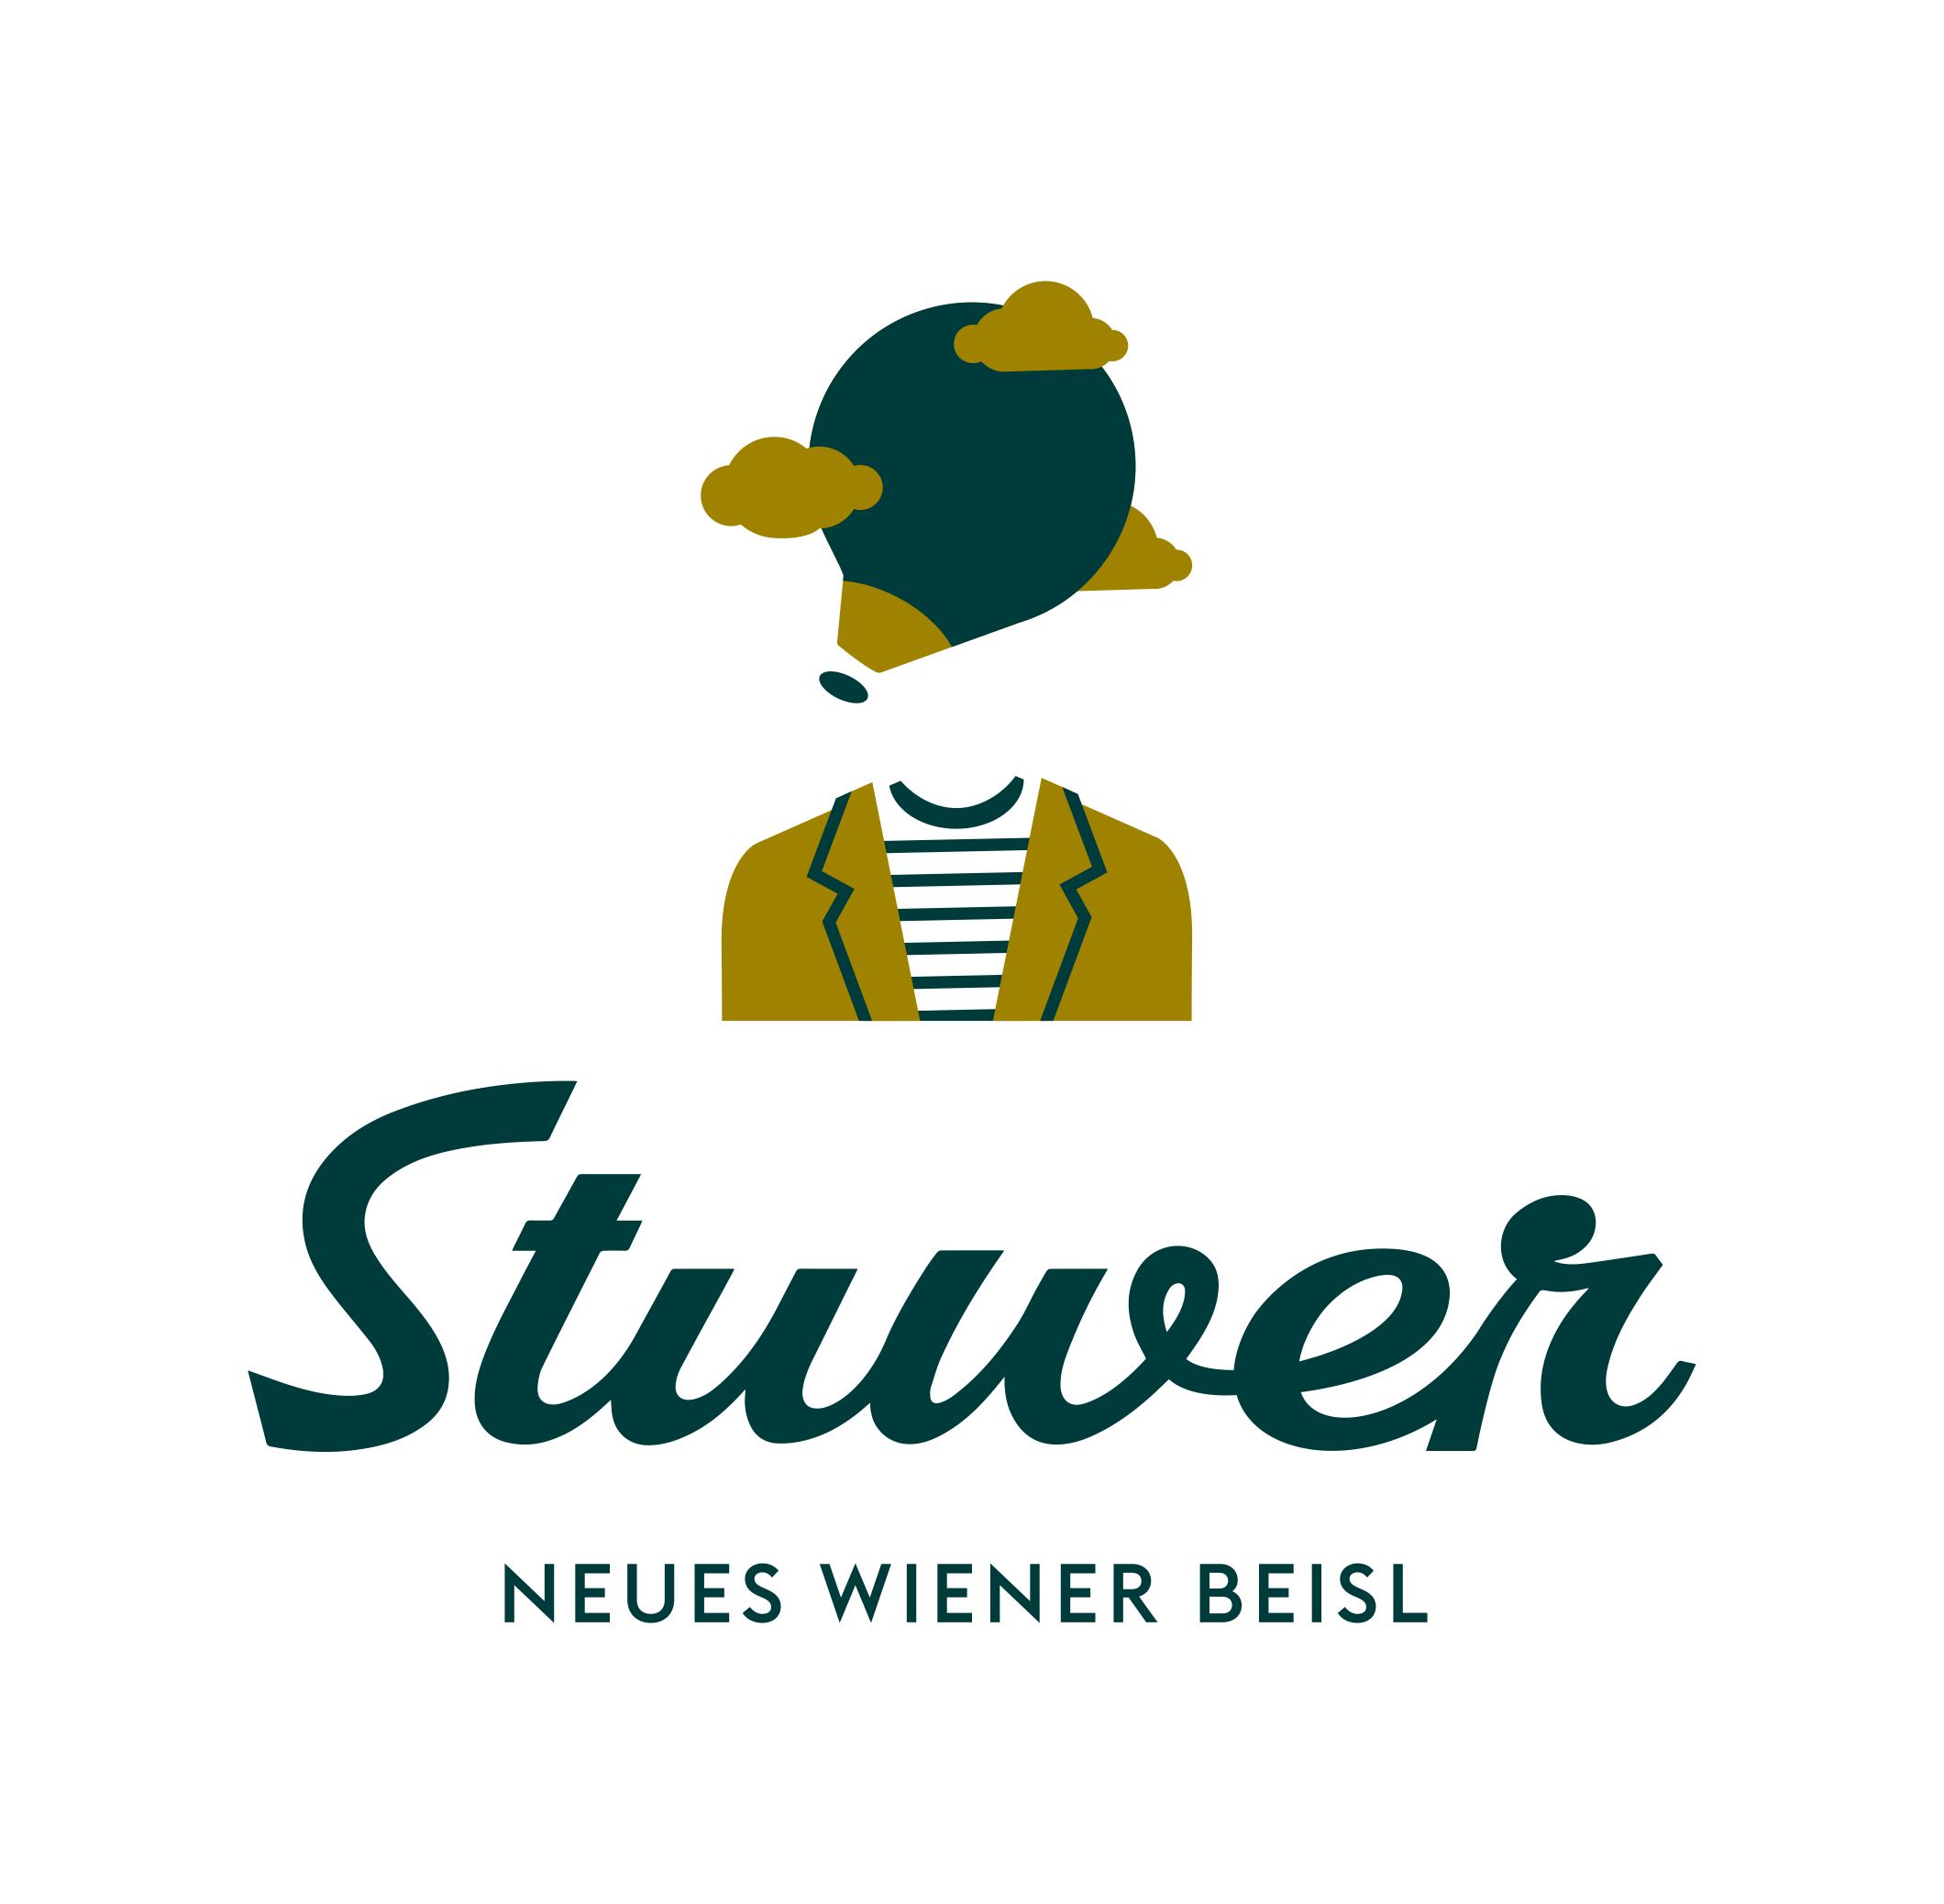 STUWER - Neues Wiener Beisl